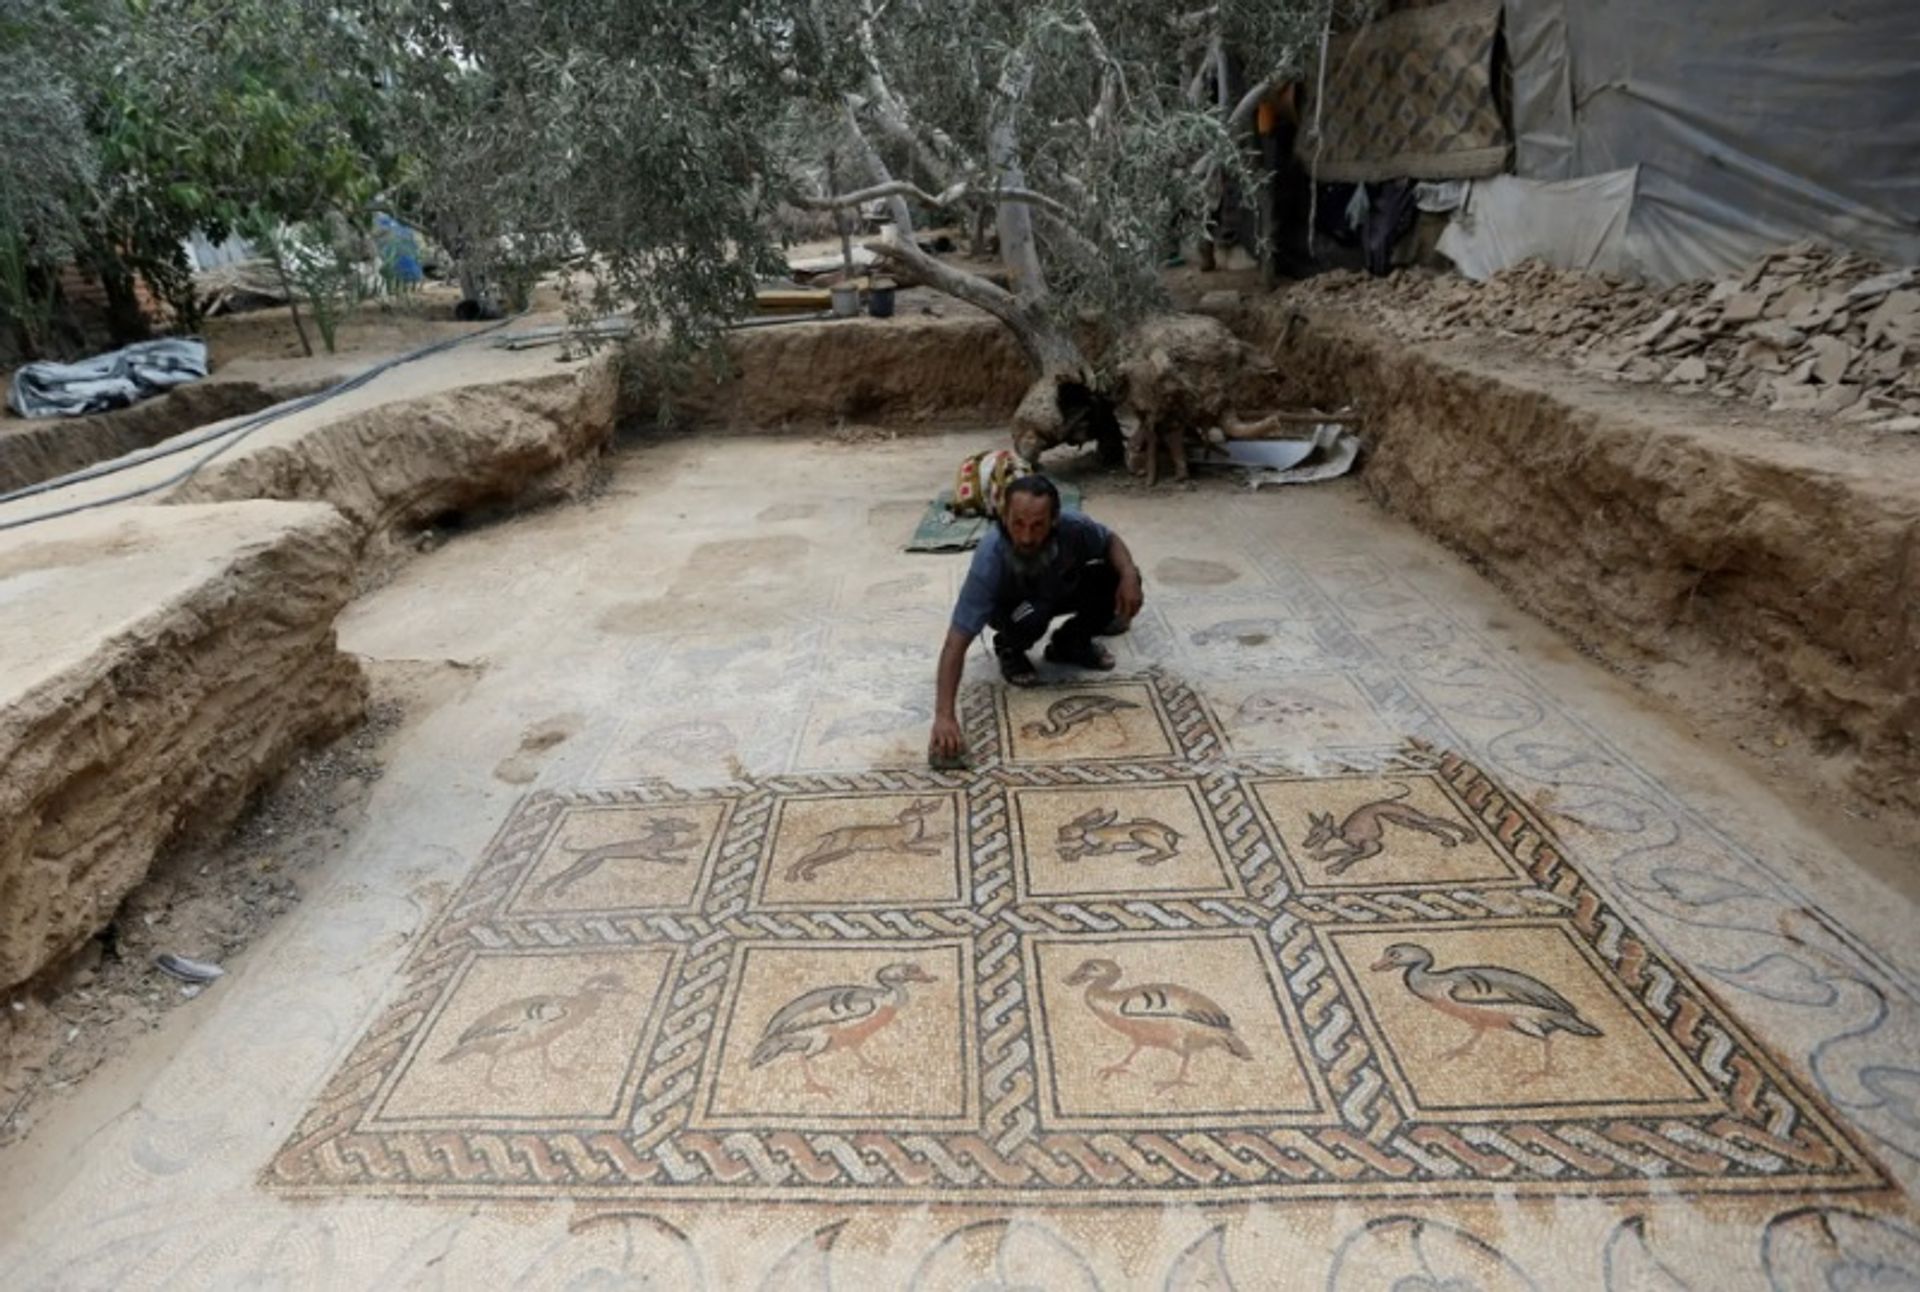 סלמאן אל-נבאהין עם רצפת הפסיפס שחשף בבוריג'

צילום: רויטרס